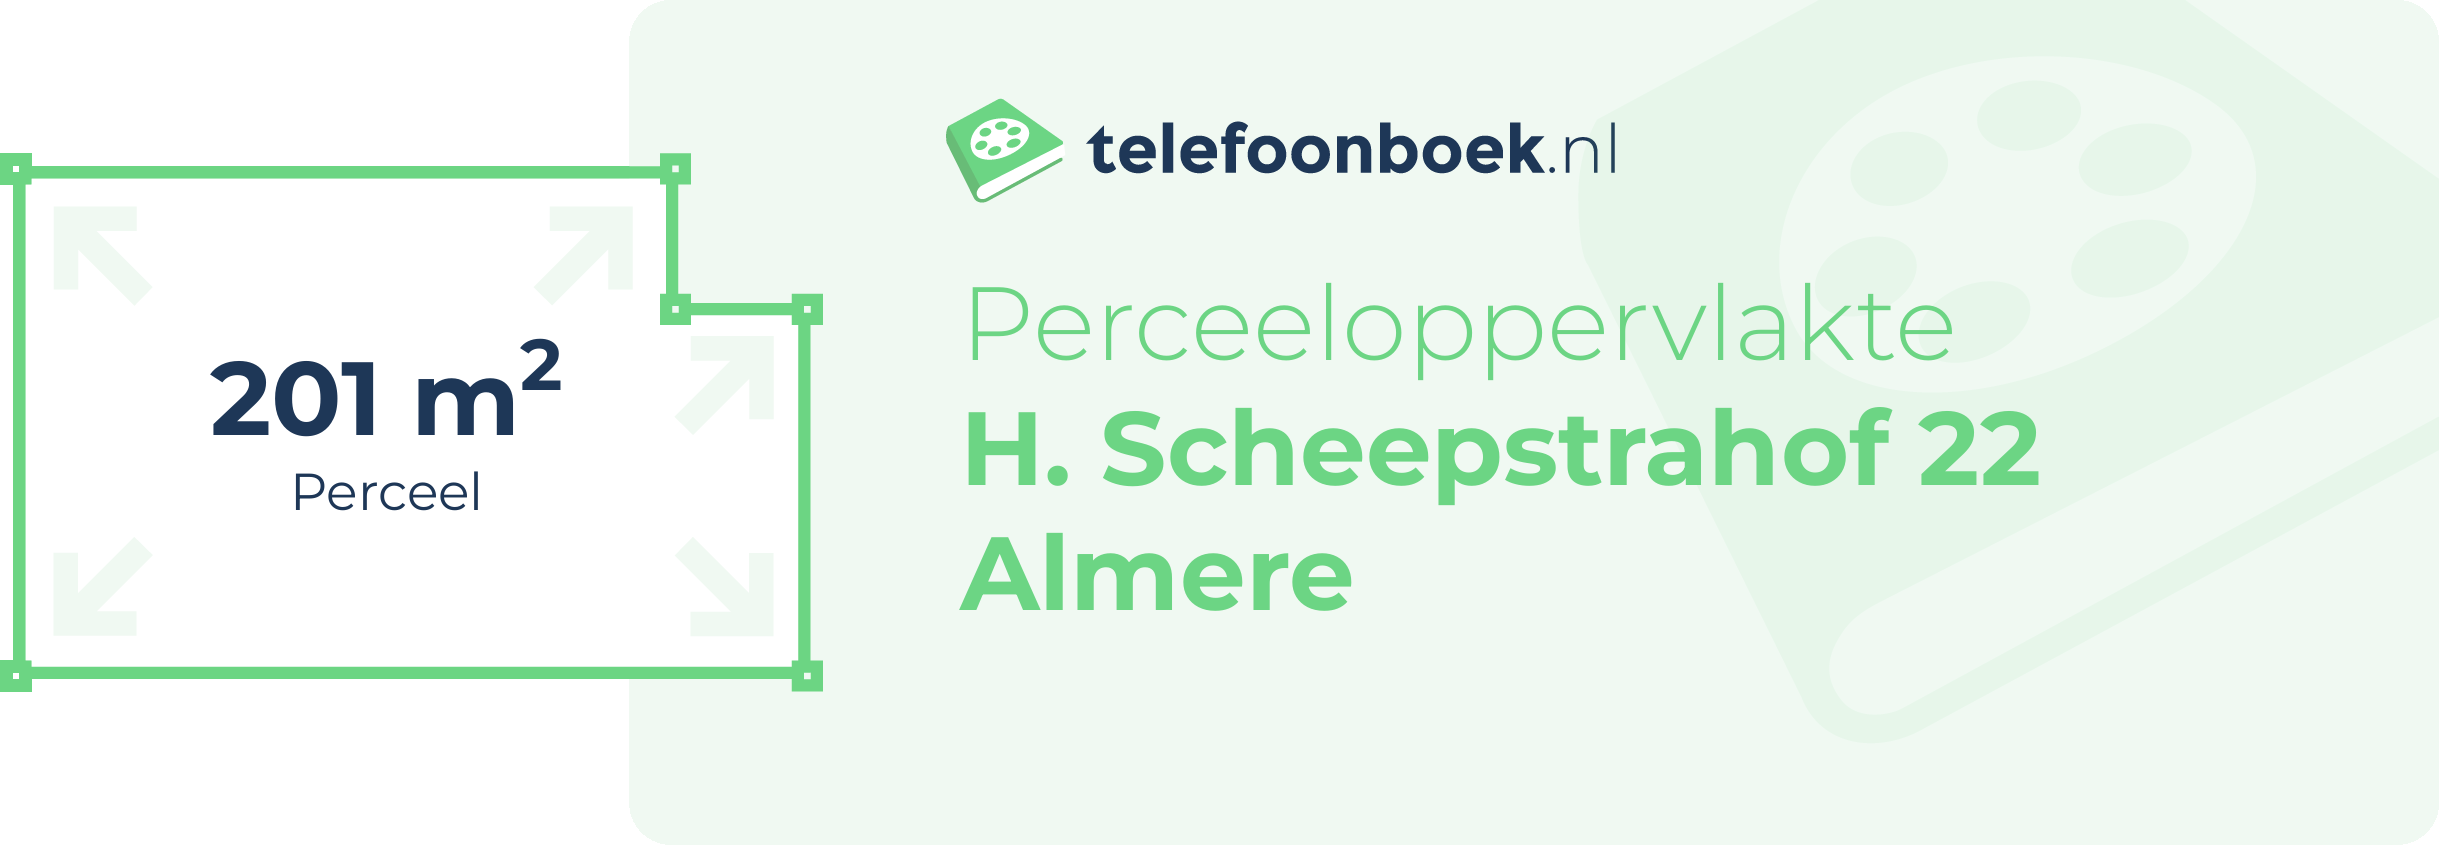 Perceeloppervlakte H. Scheepstrahof 22 Almere